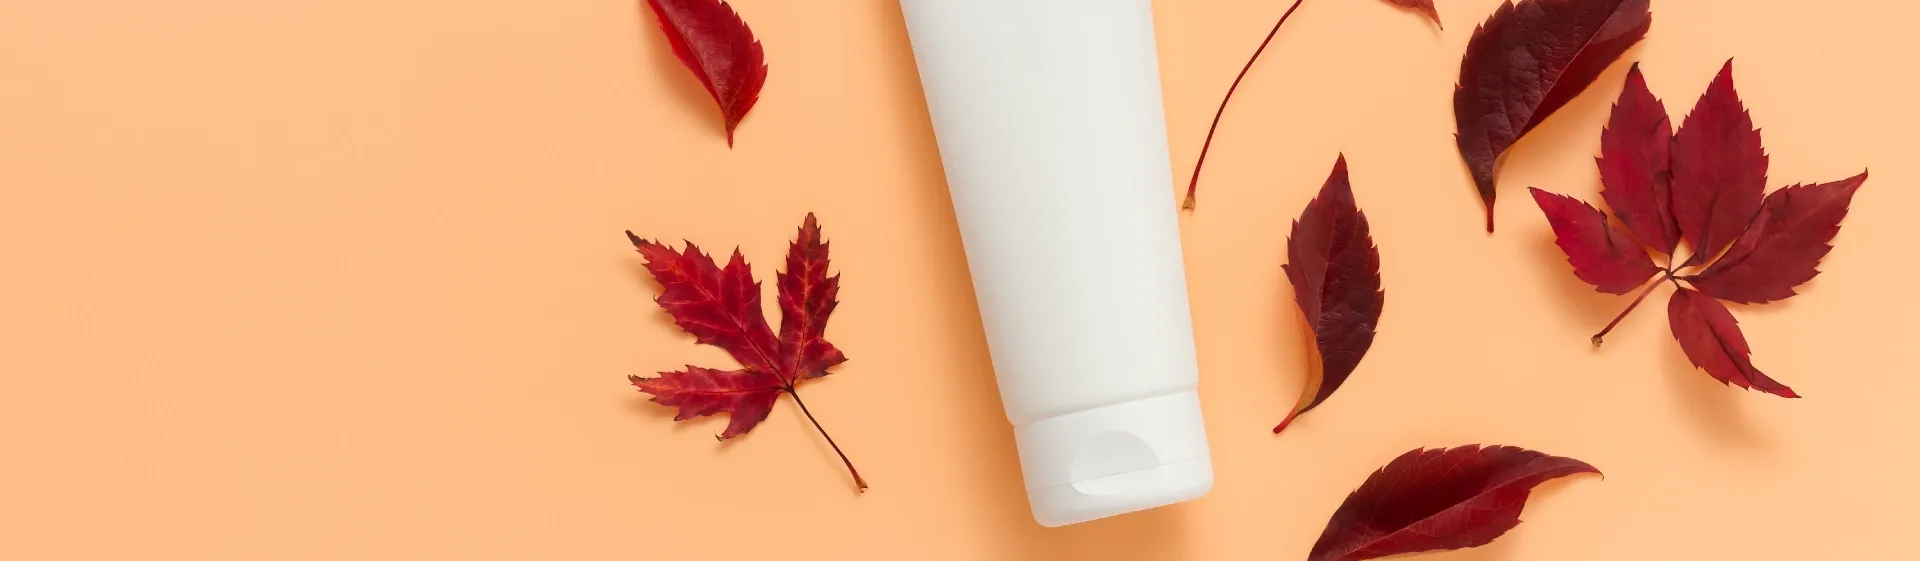 Cuidados com a pele no outono: dicas e produtos essenciais